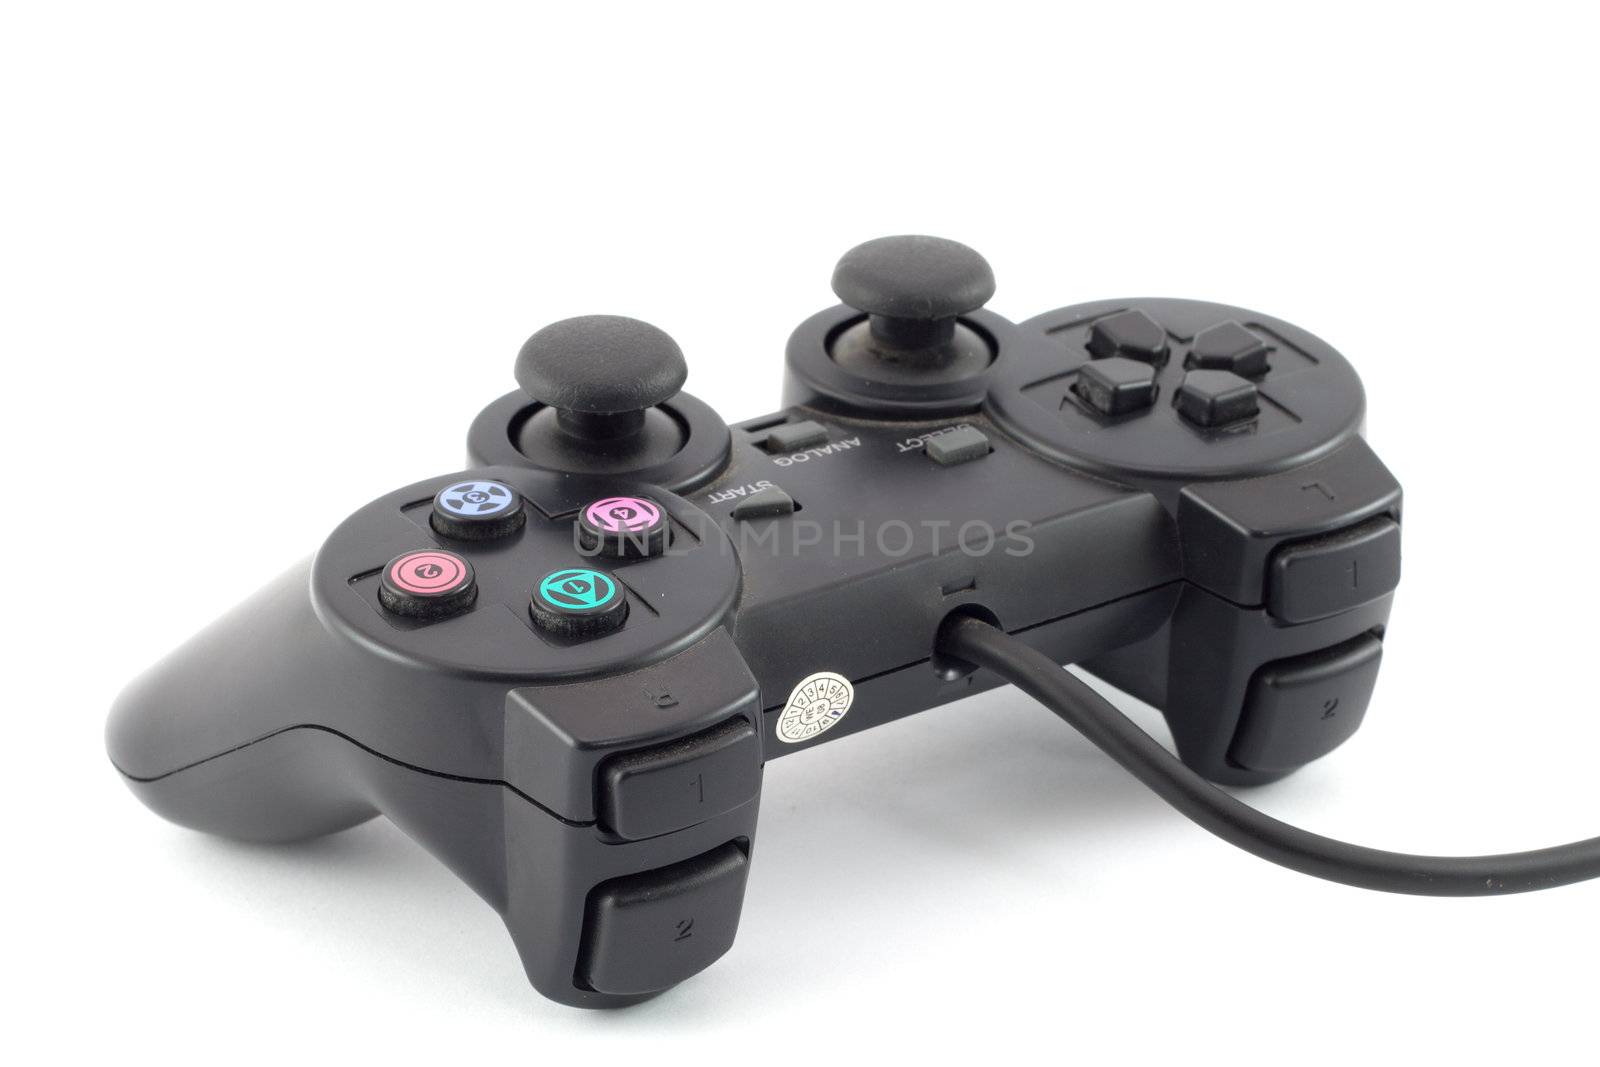 Black gaming joystick on white background